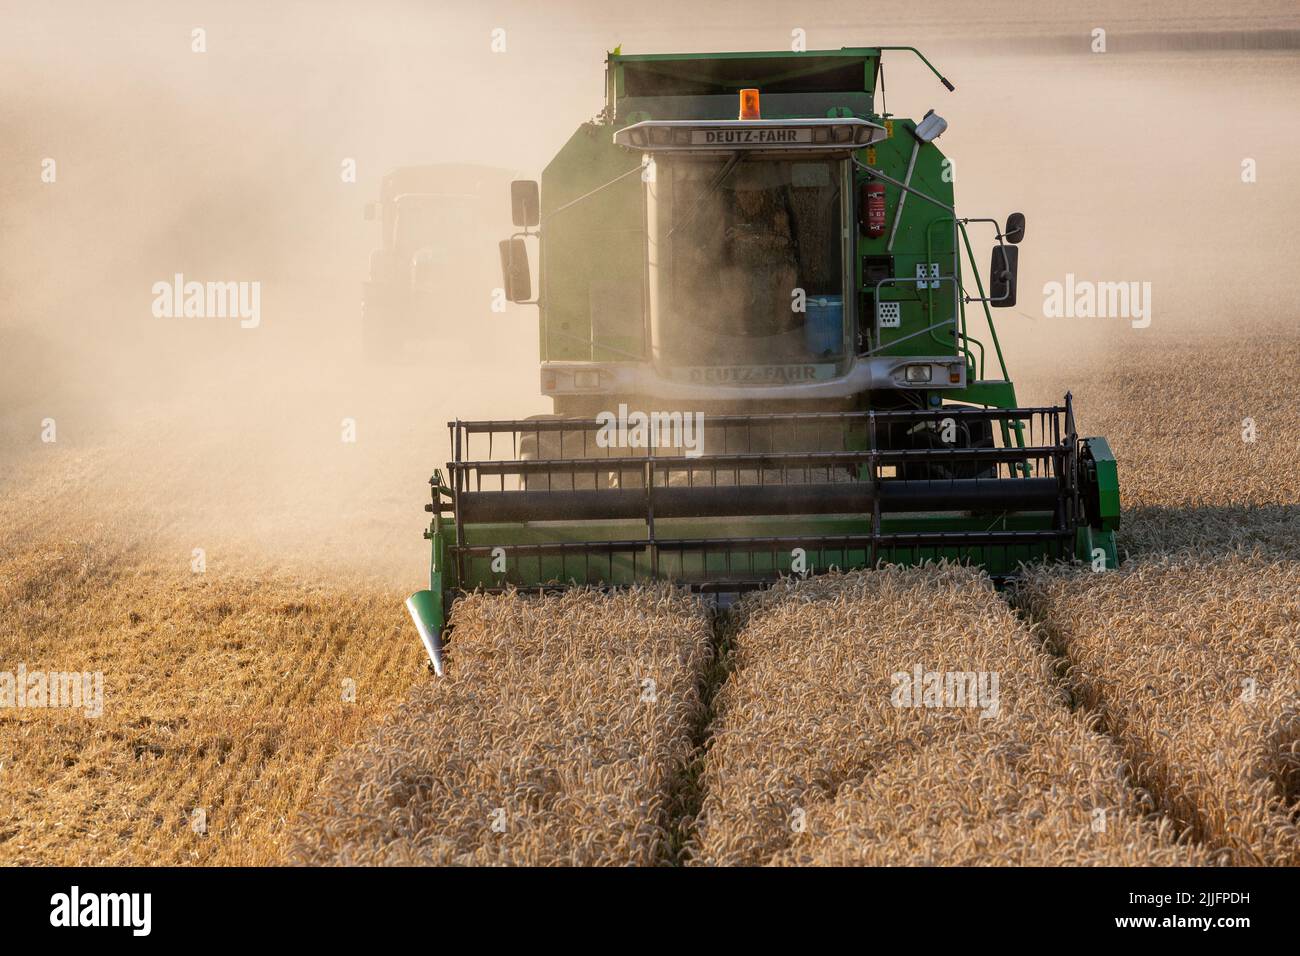 Cosecha de trigo en curso con cosechadoras. Puesta de sol iluminando el polvo levantado. Foto de stock